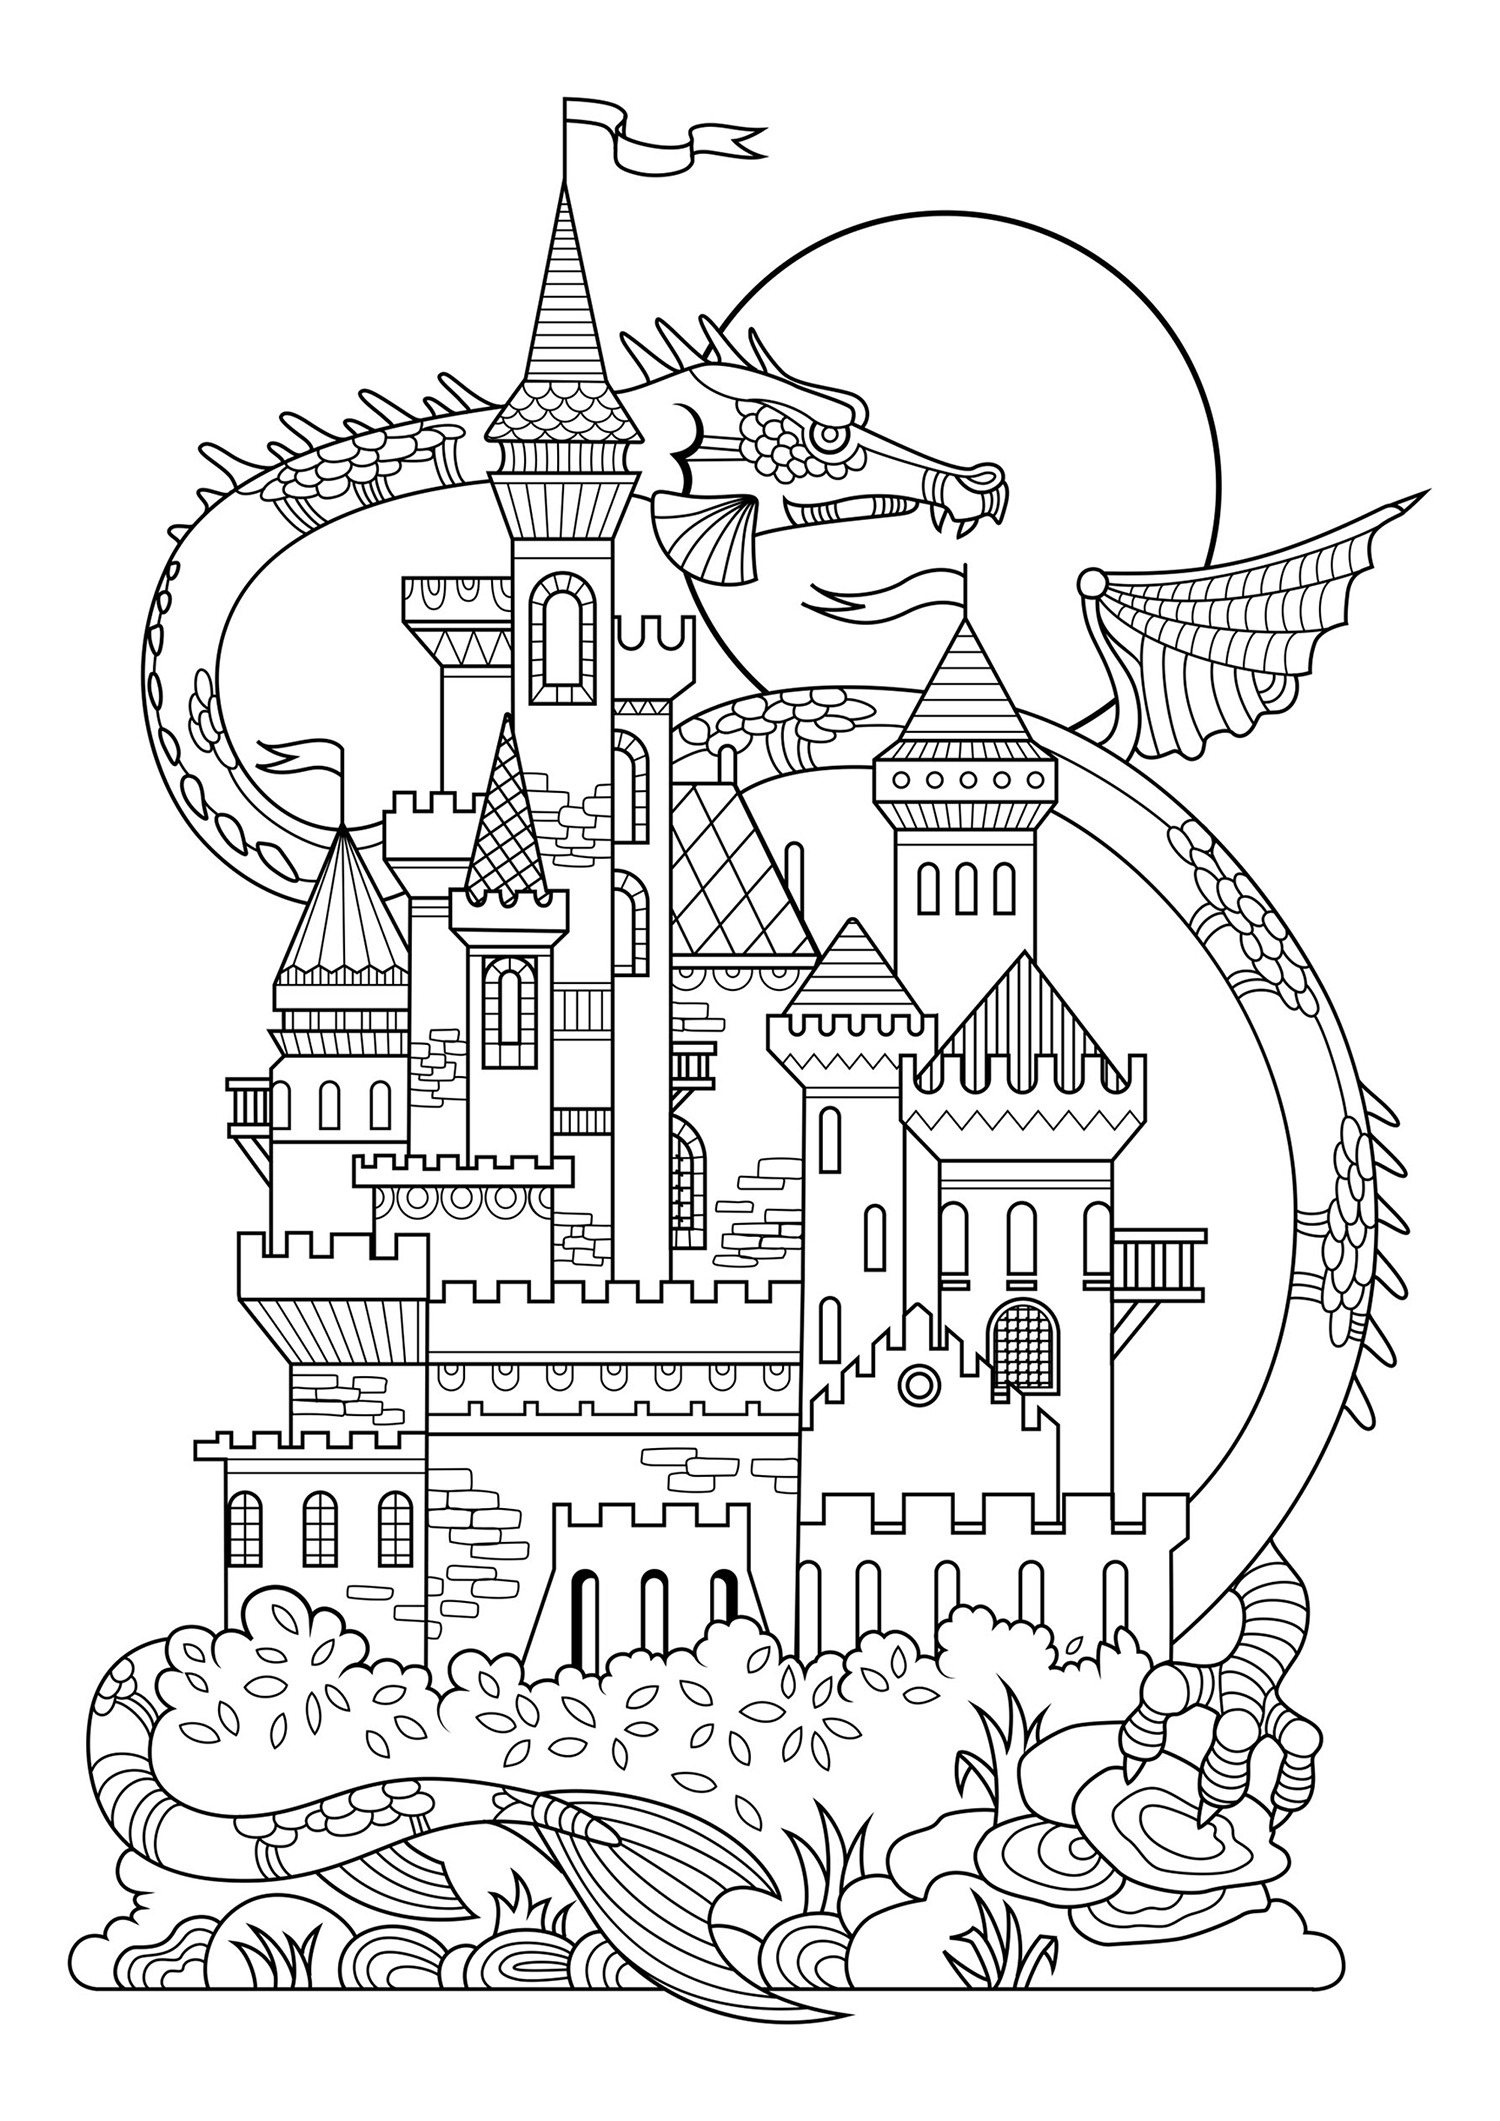 Un magnifique coloriage très régulier représentant un beau château, avec dragon géant derrière lui